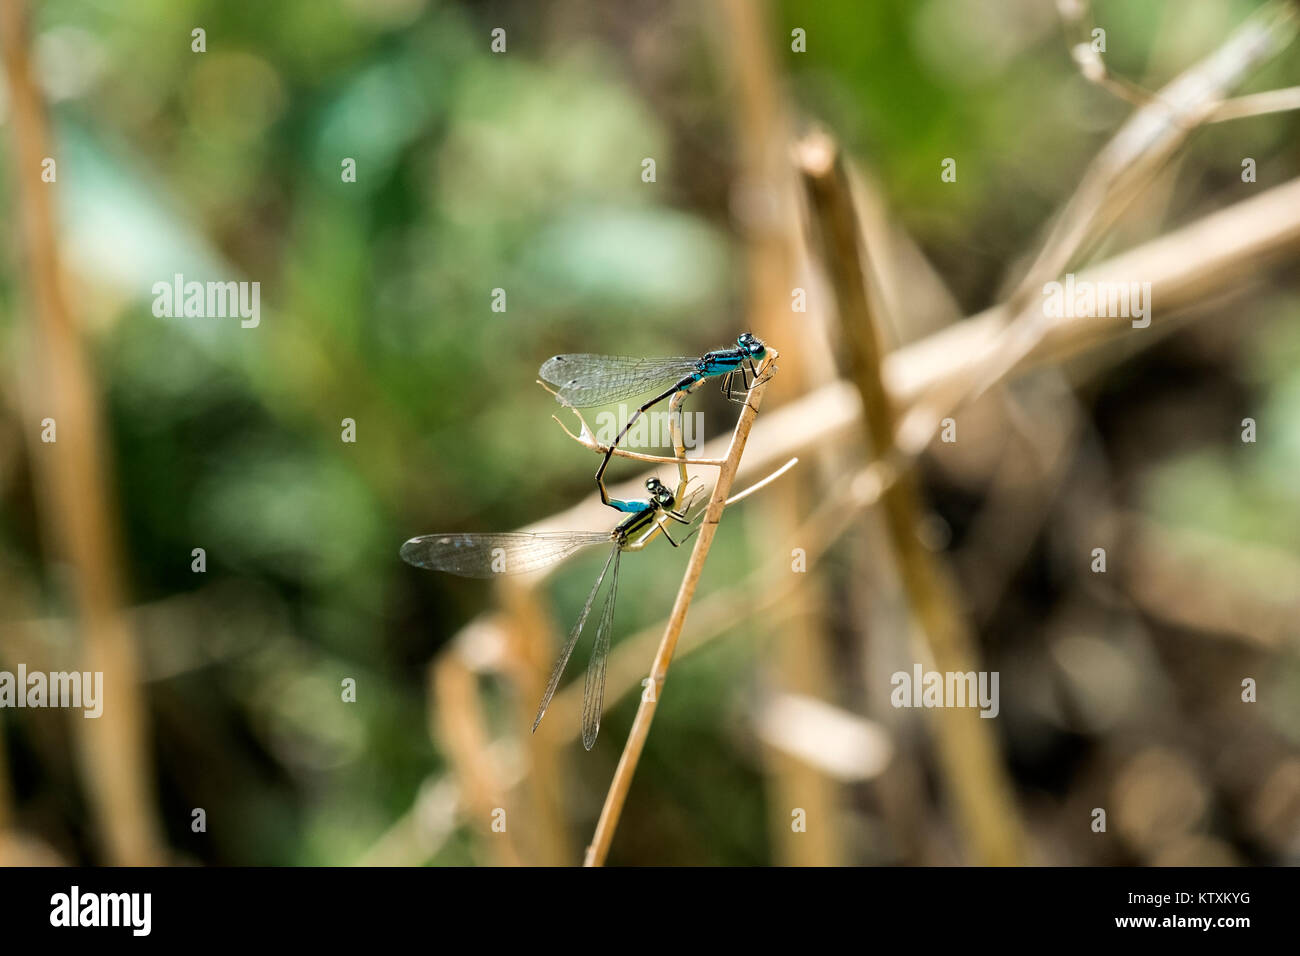 Dos de las libélulas damselfly variable en el proceso de emparejamiento (Coenagrion pulchellum) Foto de stock